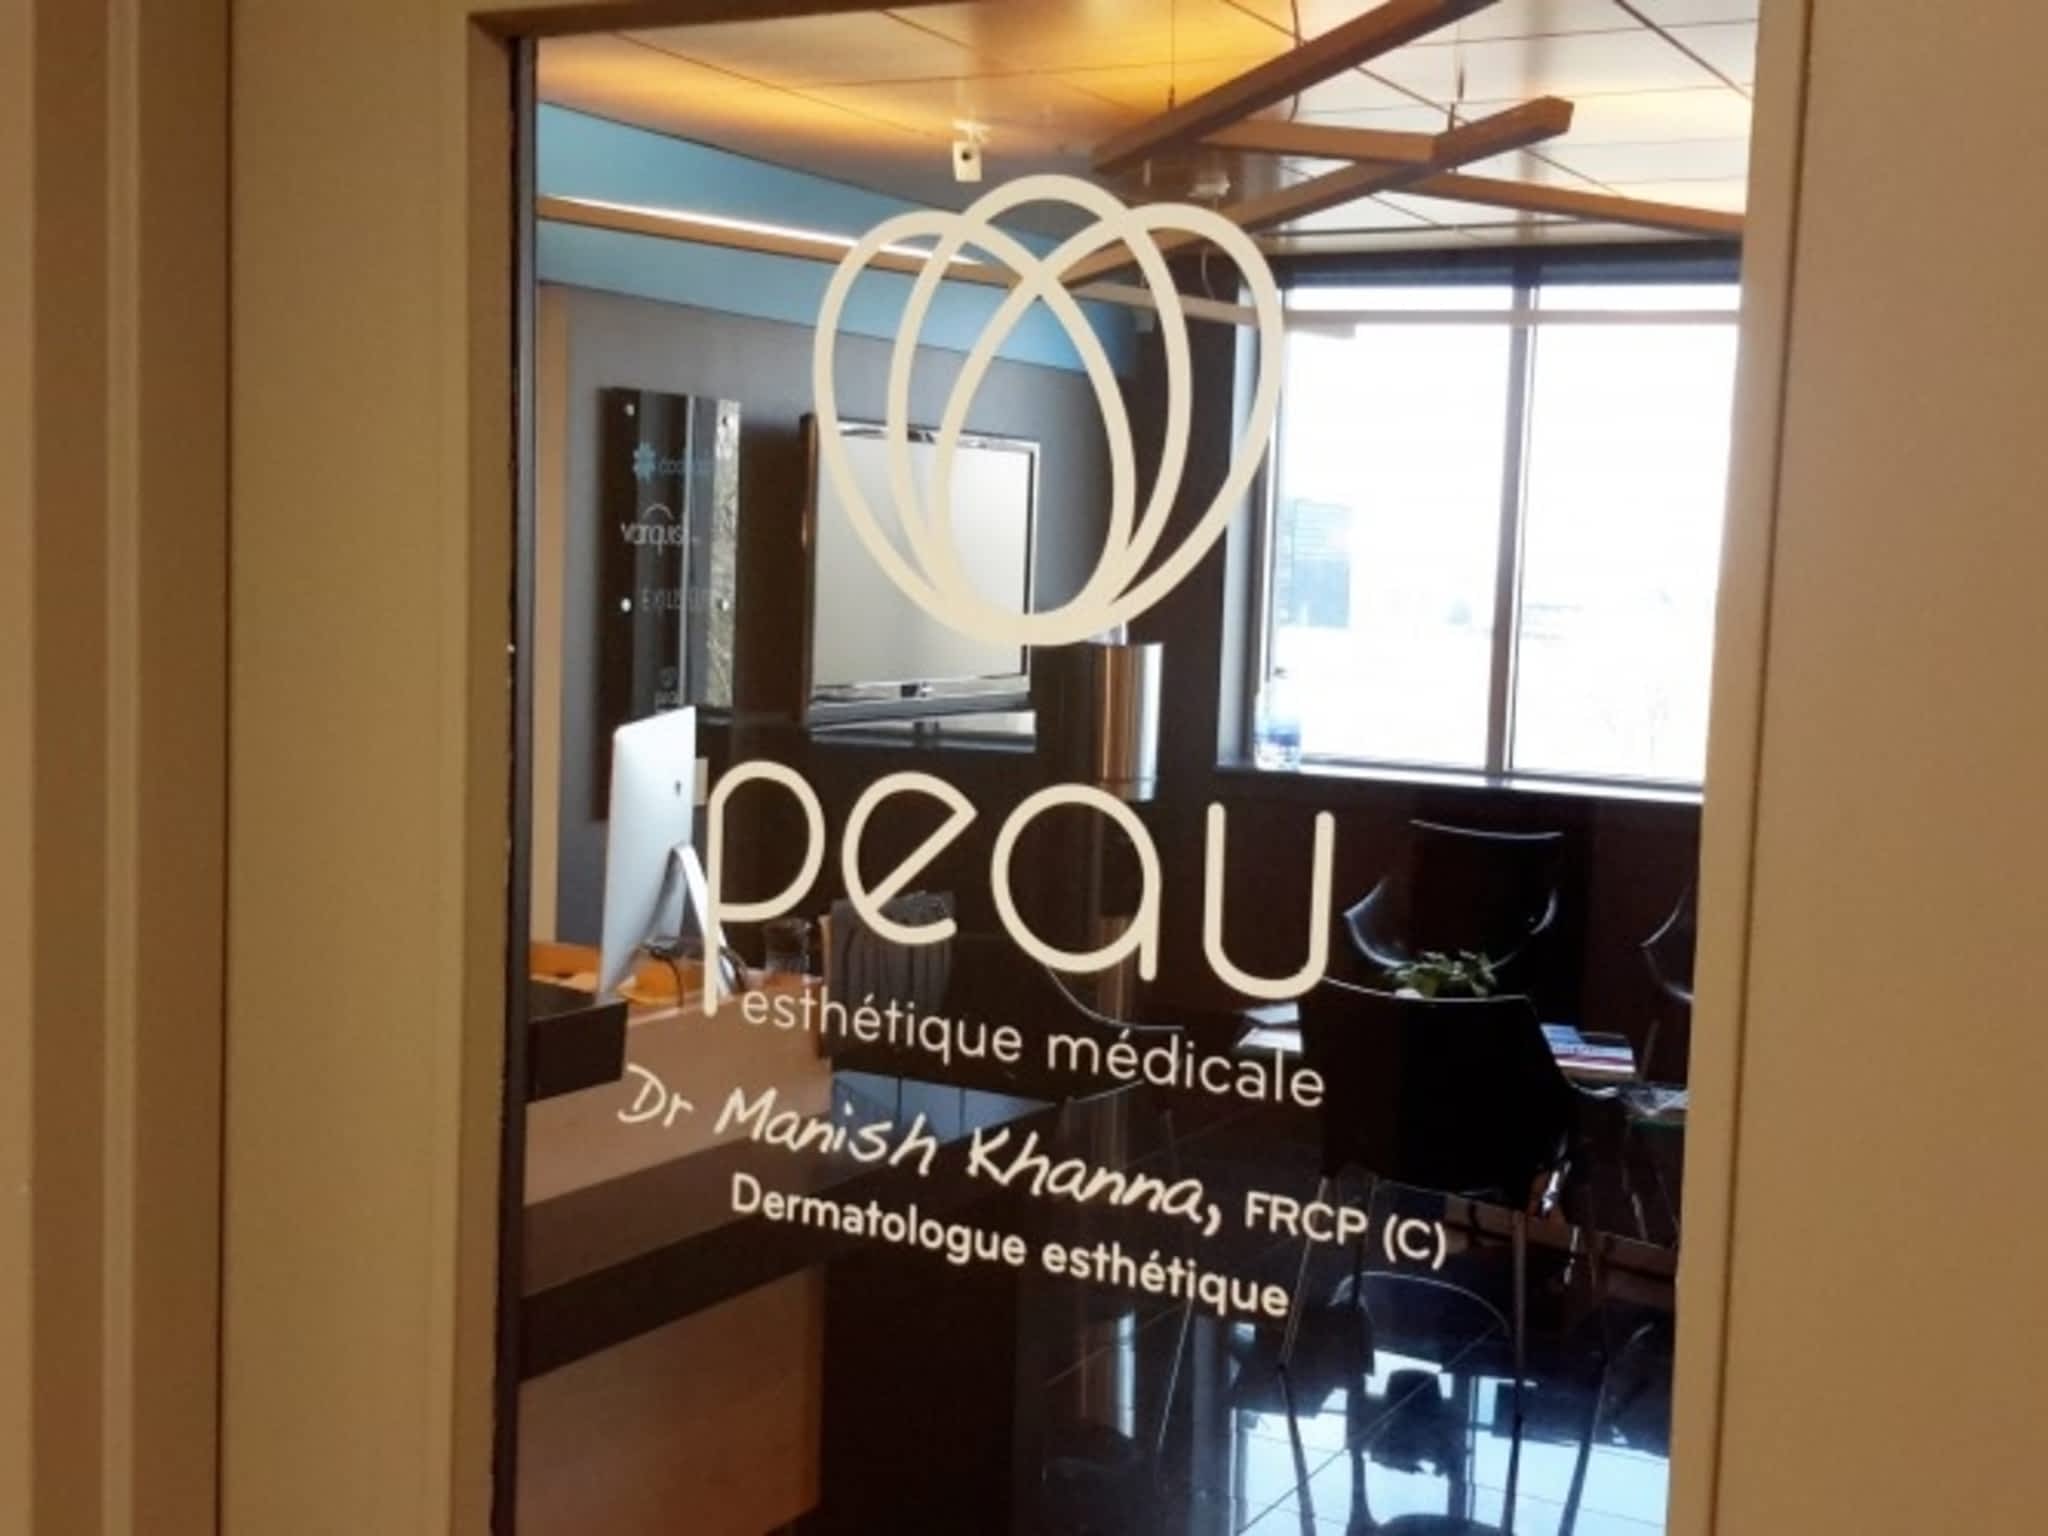 photo PEAU - Esthétique médicaSeaforth Medical Buildingle | Dermatologist Manish Khanna FRCPC